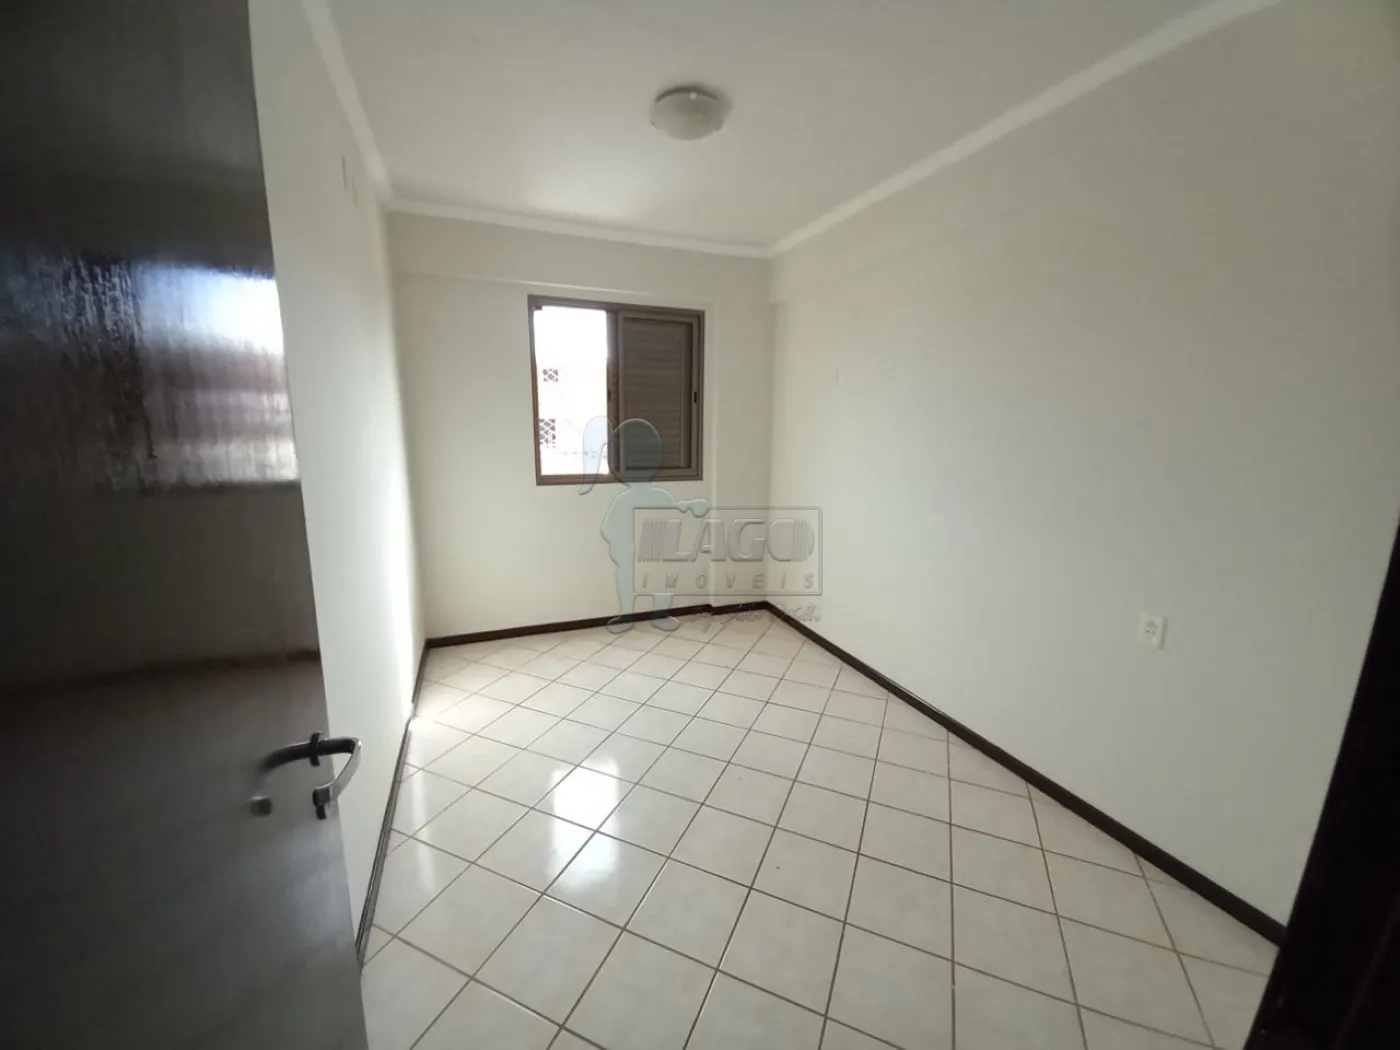 Alugar Apartamentos / Padrão em Ribeirão Preto R$ 1.700,00 - Foto 6